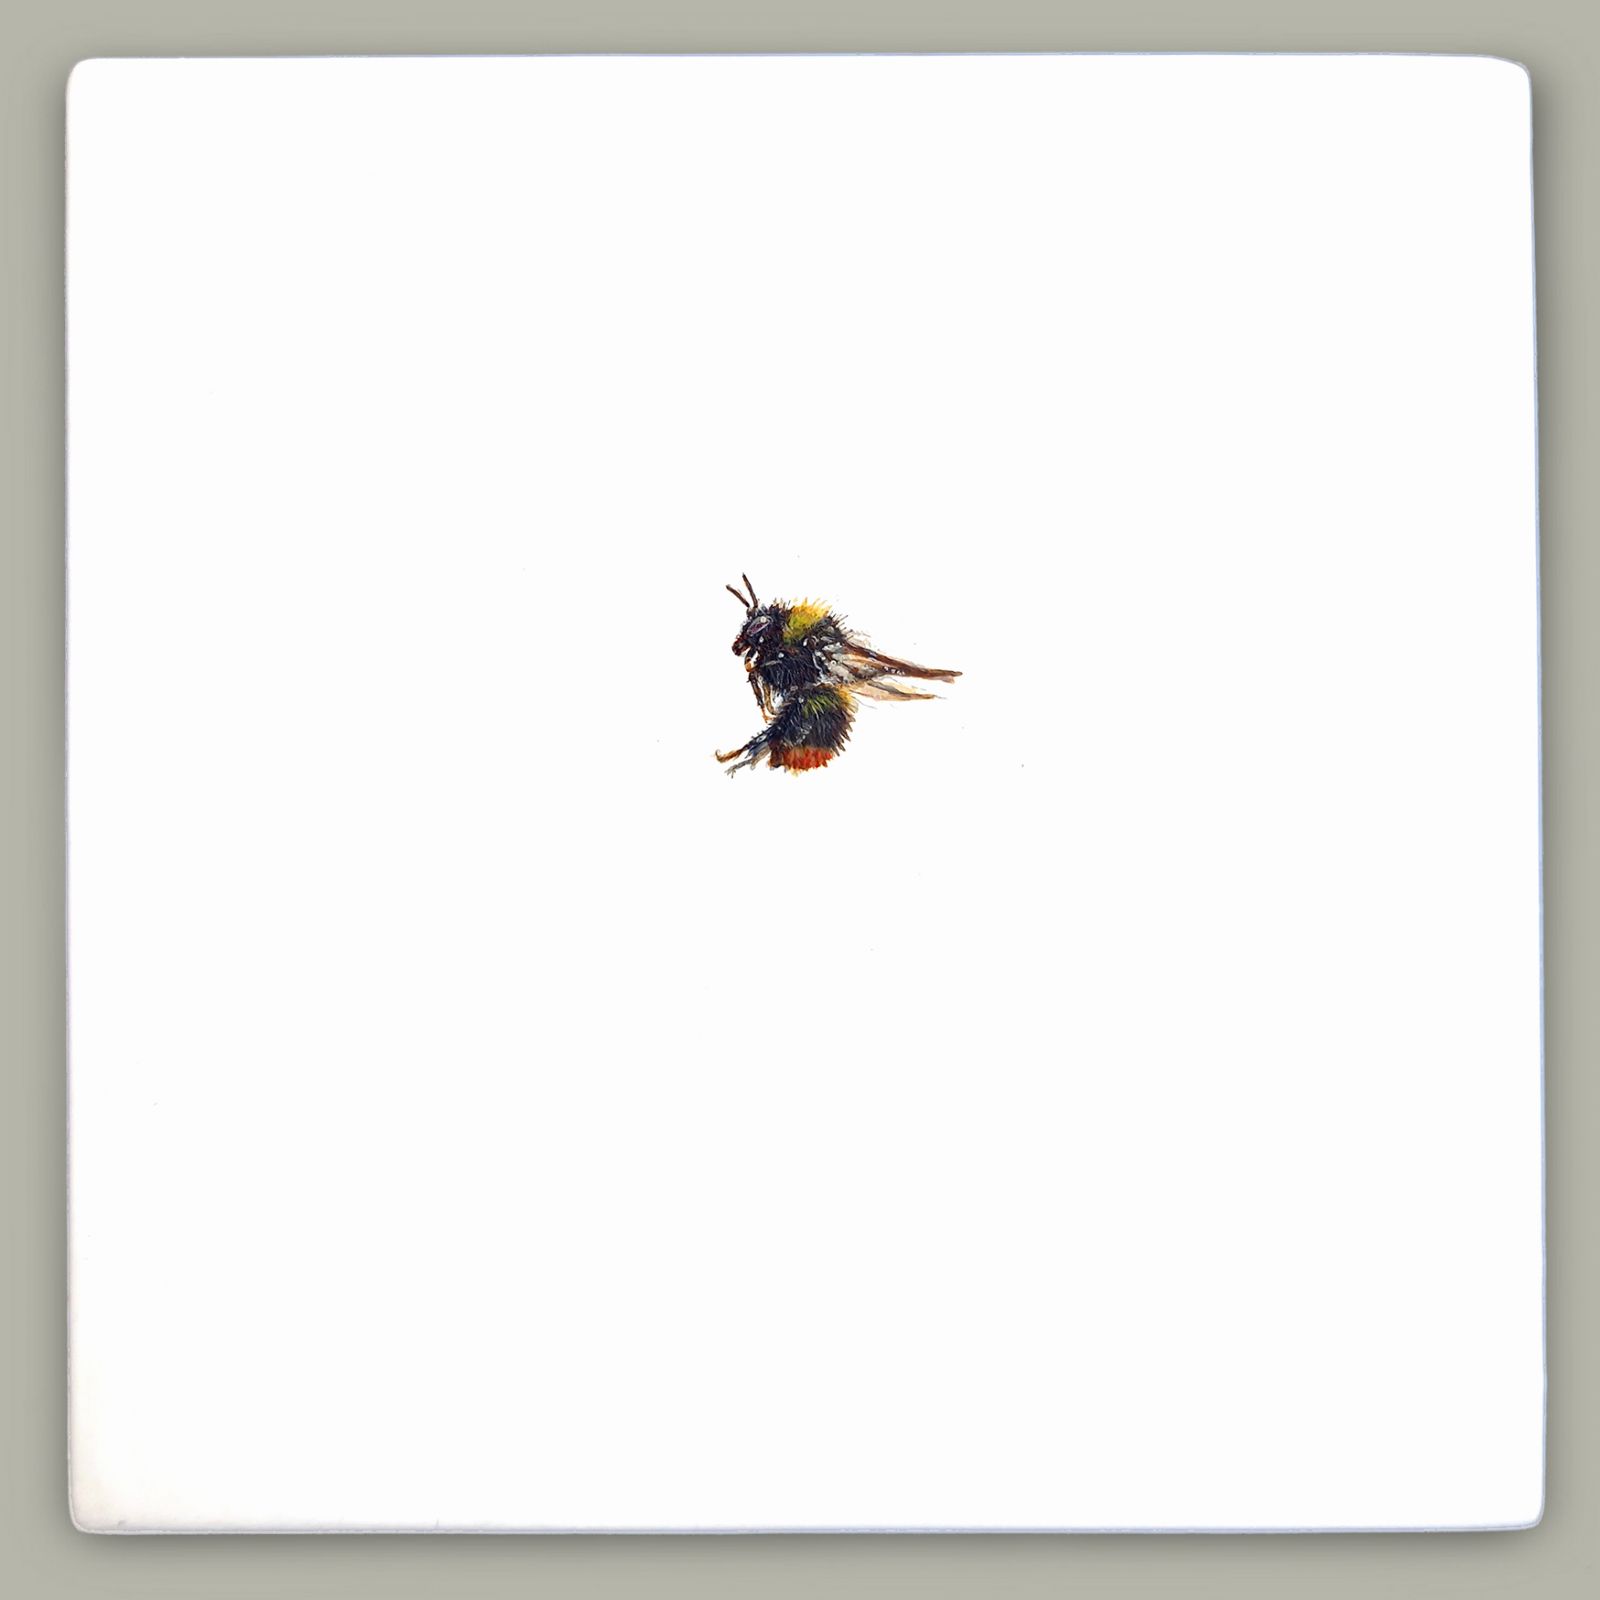 One Bee Left - Early Bumblebee by Hazel Mountford